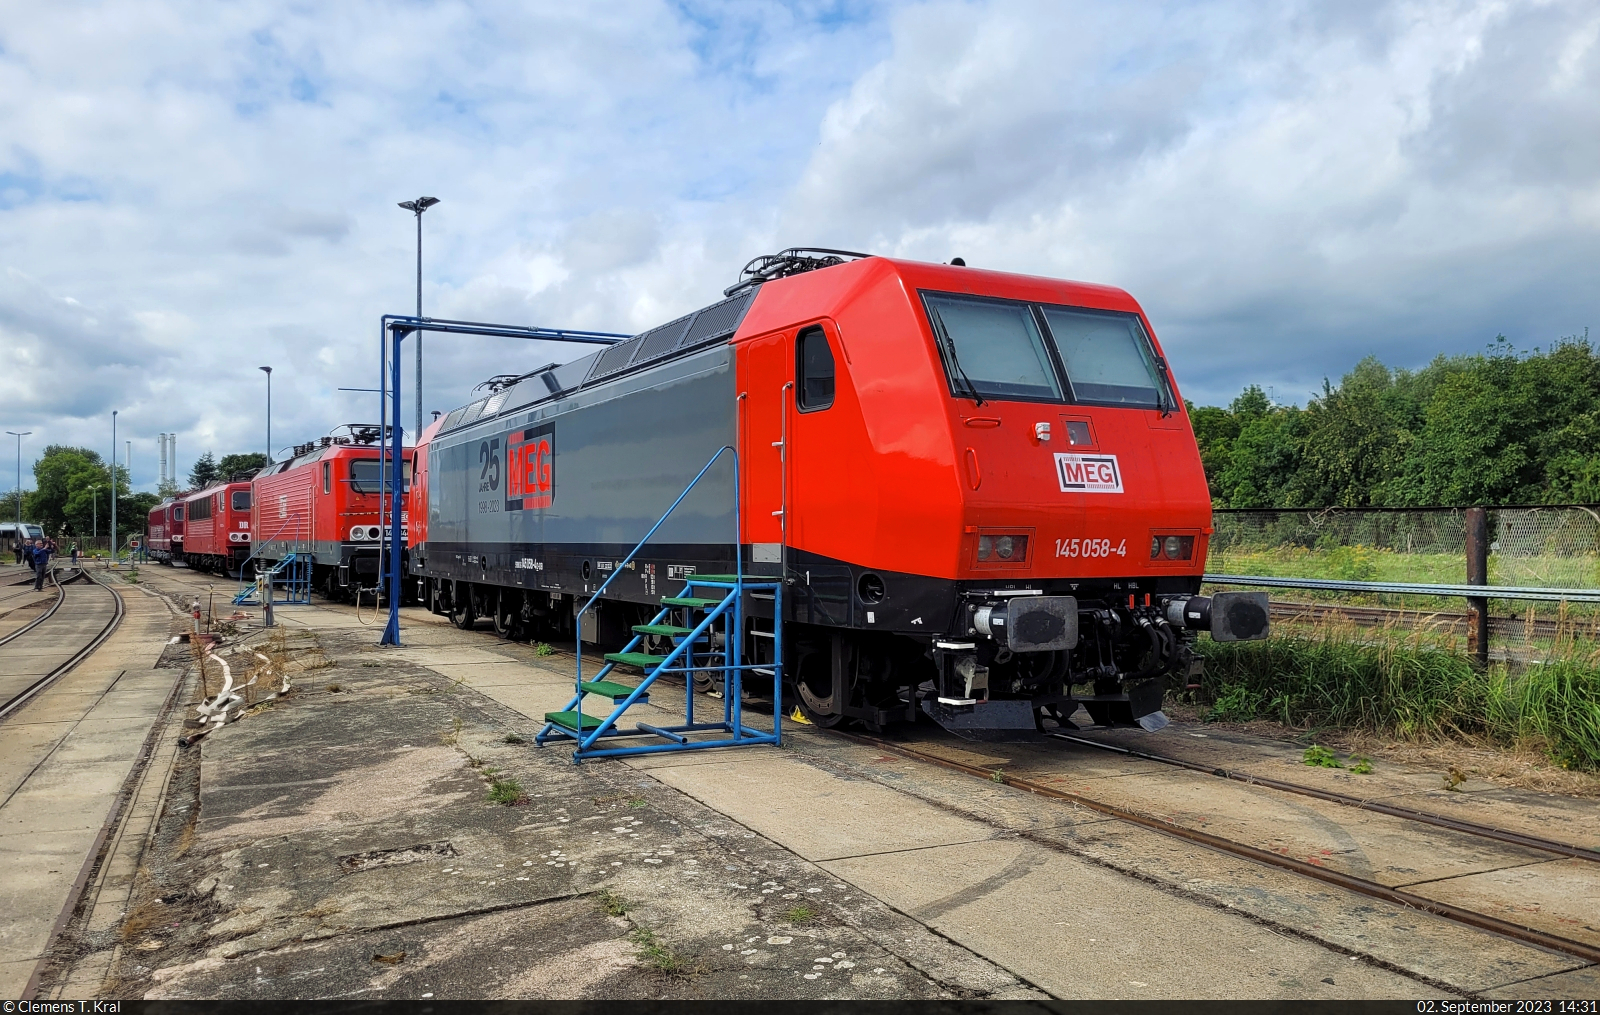 145 058-4, die im neuen Lack auf 25 Jahre MEG aufmerksam macht, war zu Besuch beim Tag der offenen Tür der Verkehrs Industrie Systeme GmbH (VIS) in Halberstadt.

🧰 DB Cargo, vermietet an die Mitteldeutsche Eisenbahn GmbH (MEG)
🕓 2.9.2023 | 14:31 Uhr